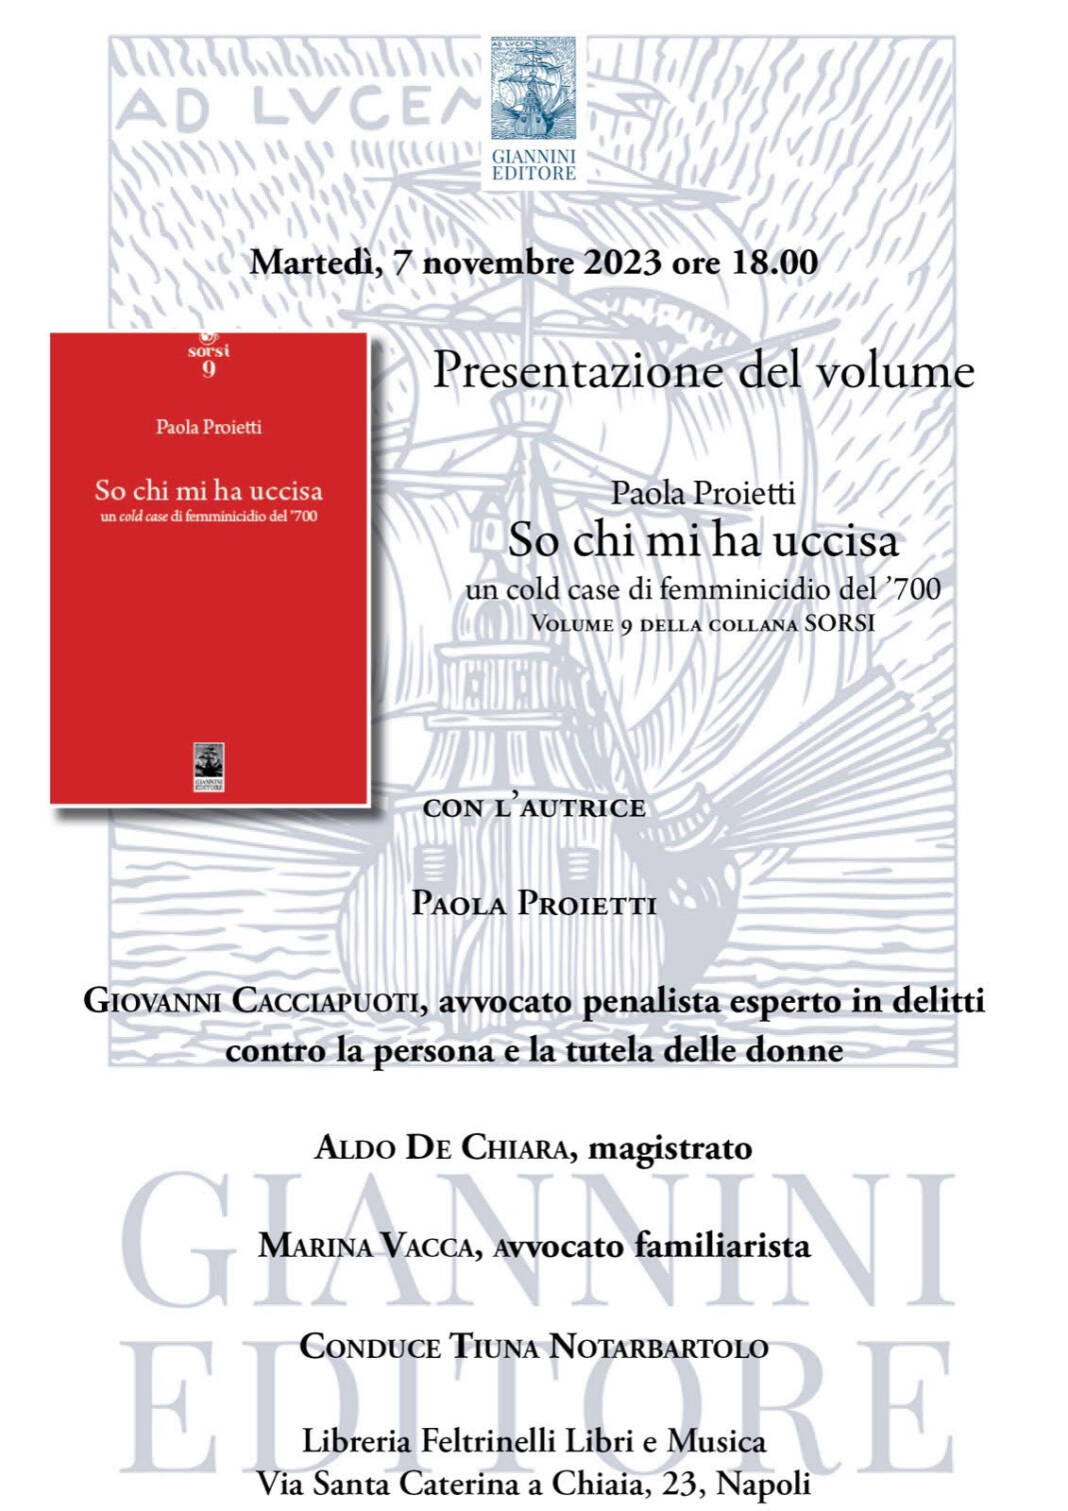 'So chi mi ha ucciso', Paola Proietti presenta il suo libro a La Feltrinelli di Napoli